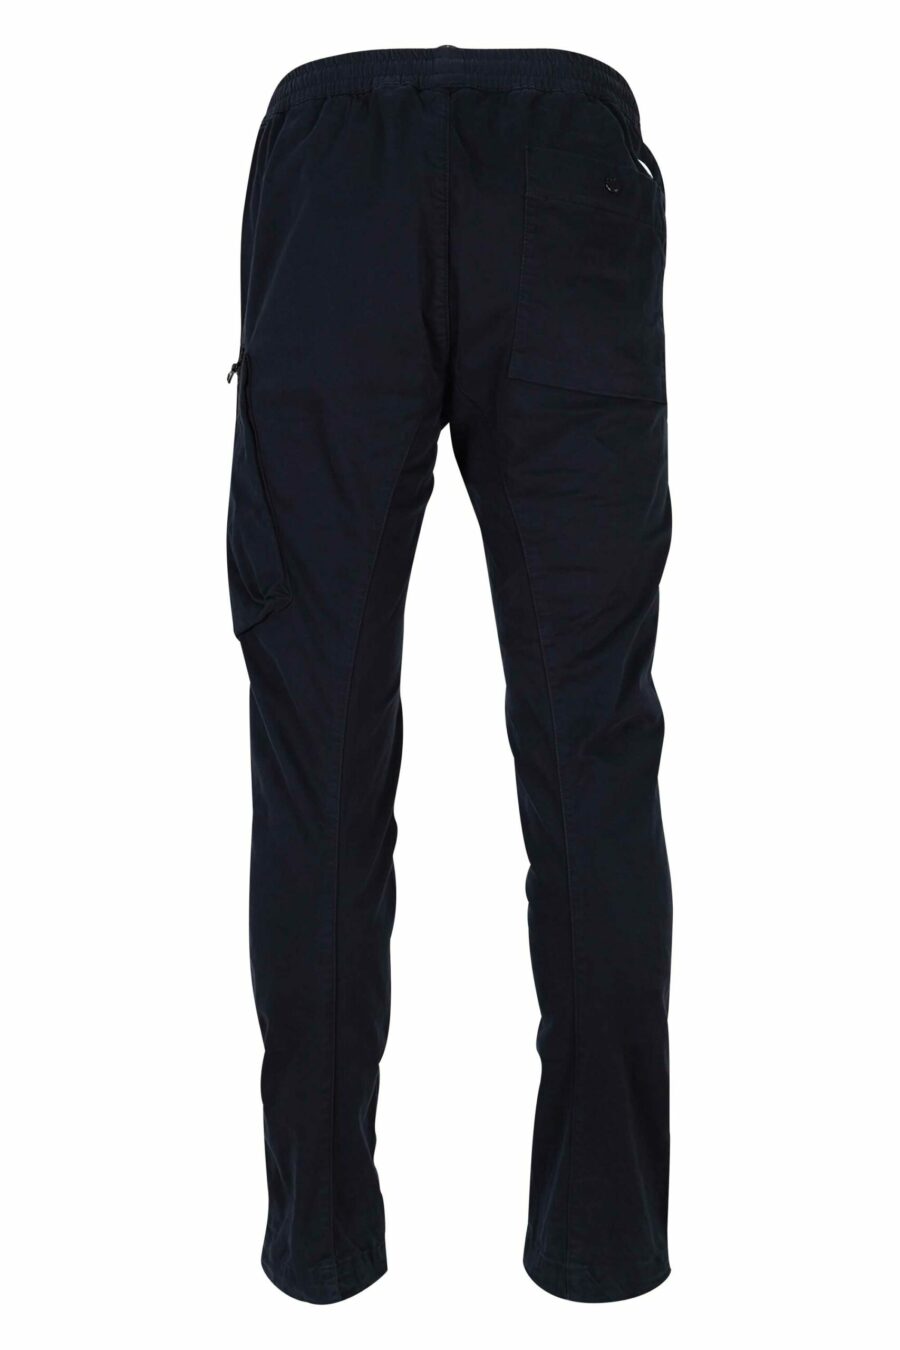 Pantalon en satin stretch bleu foncé avec poche latérale et lentille logo - 7620943578485 2 1 scaled